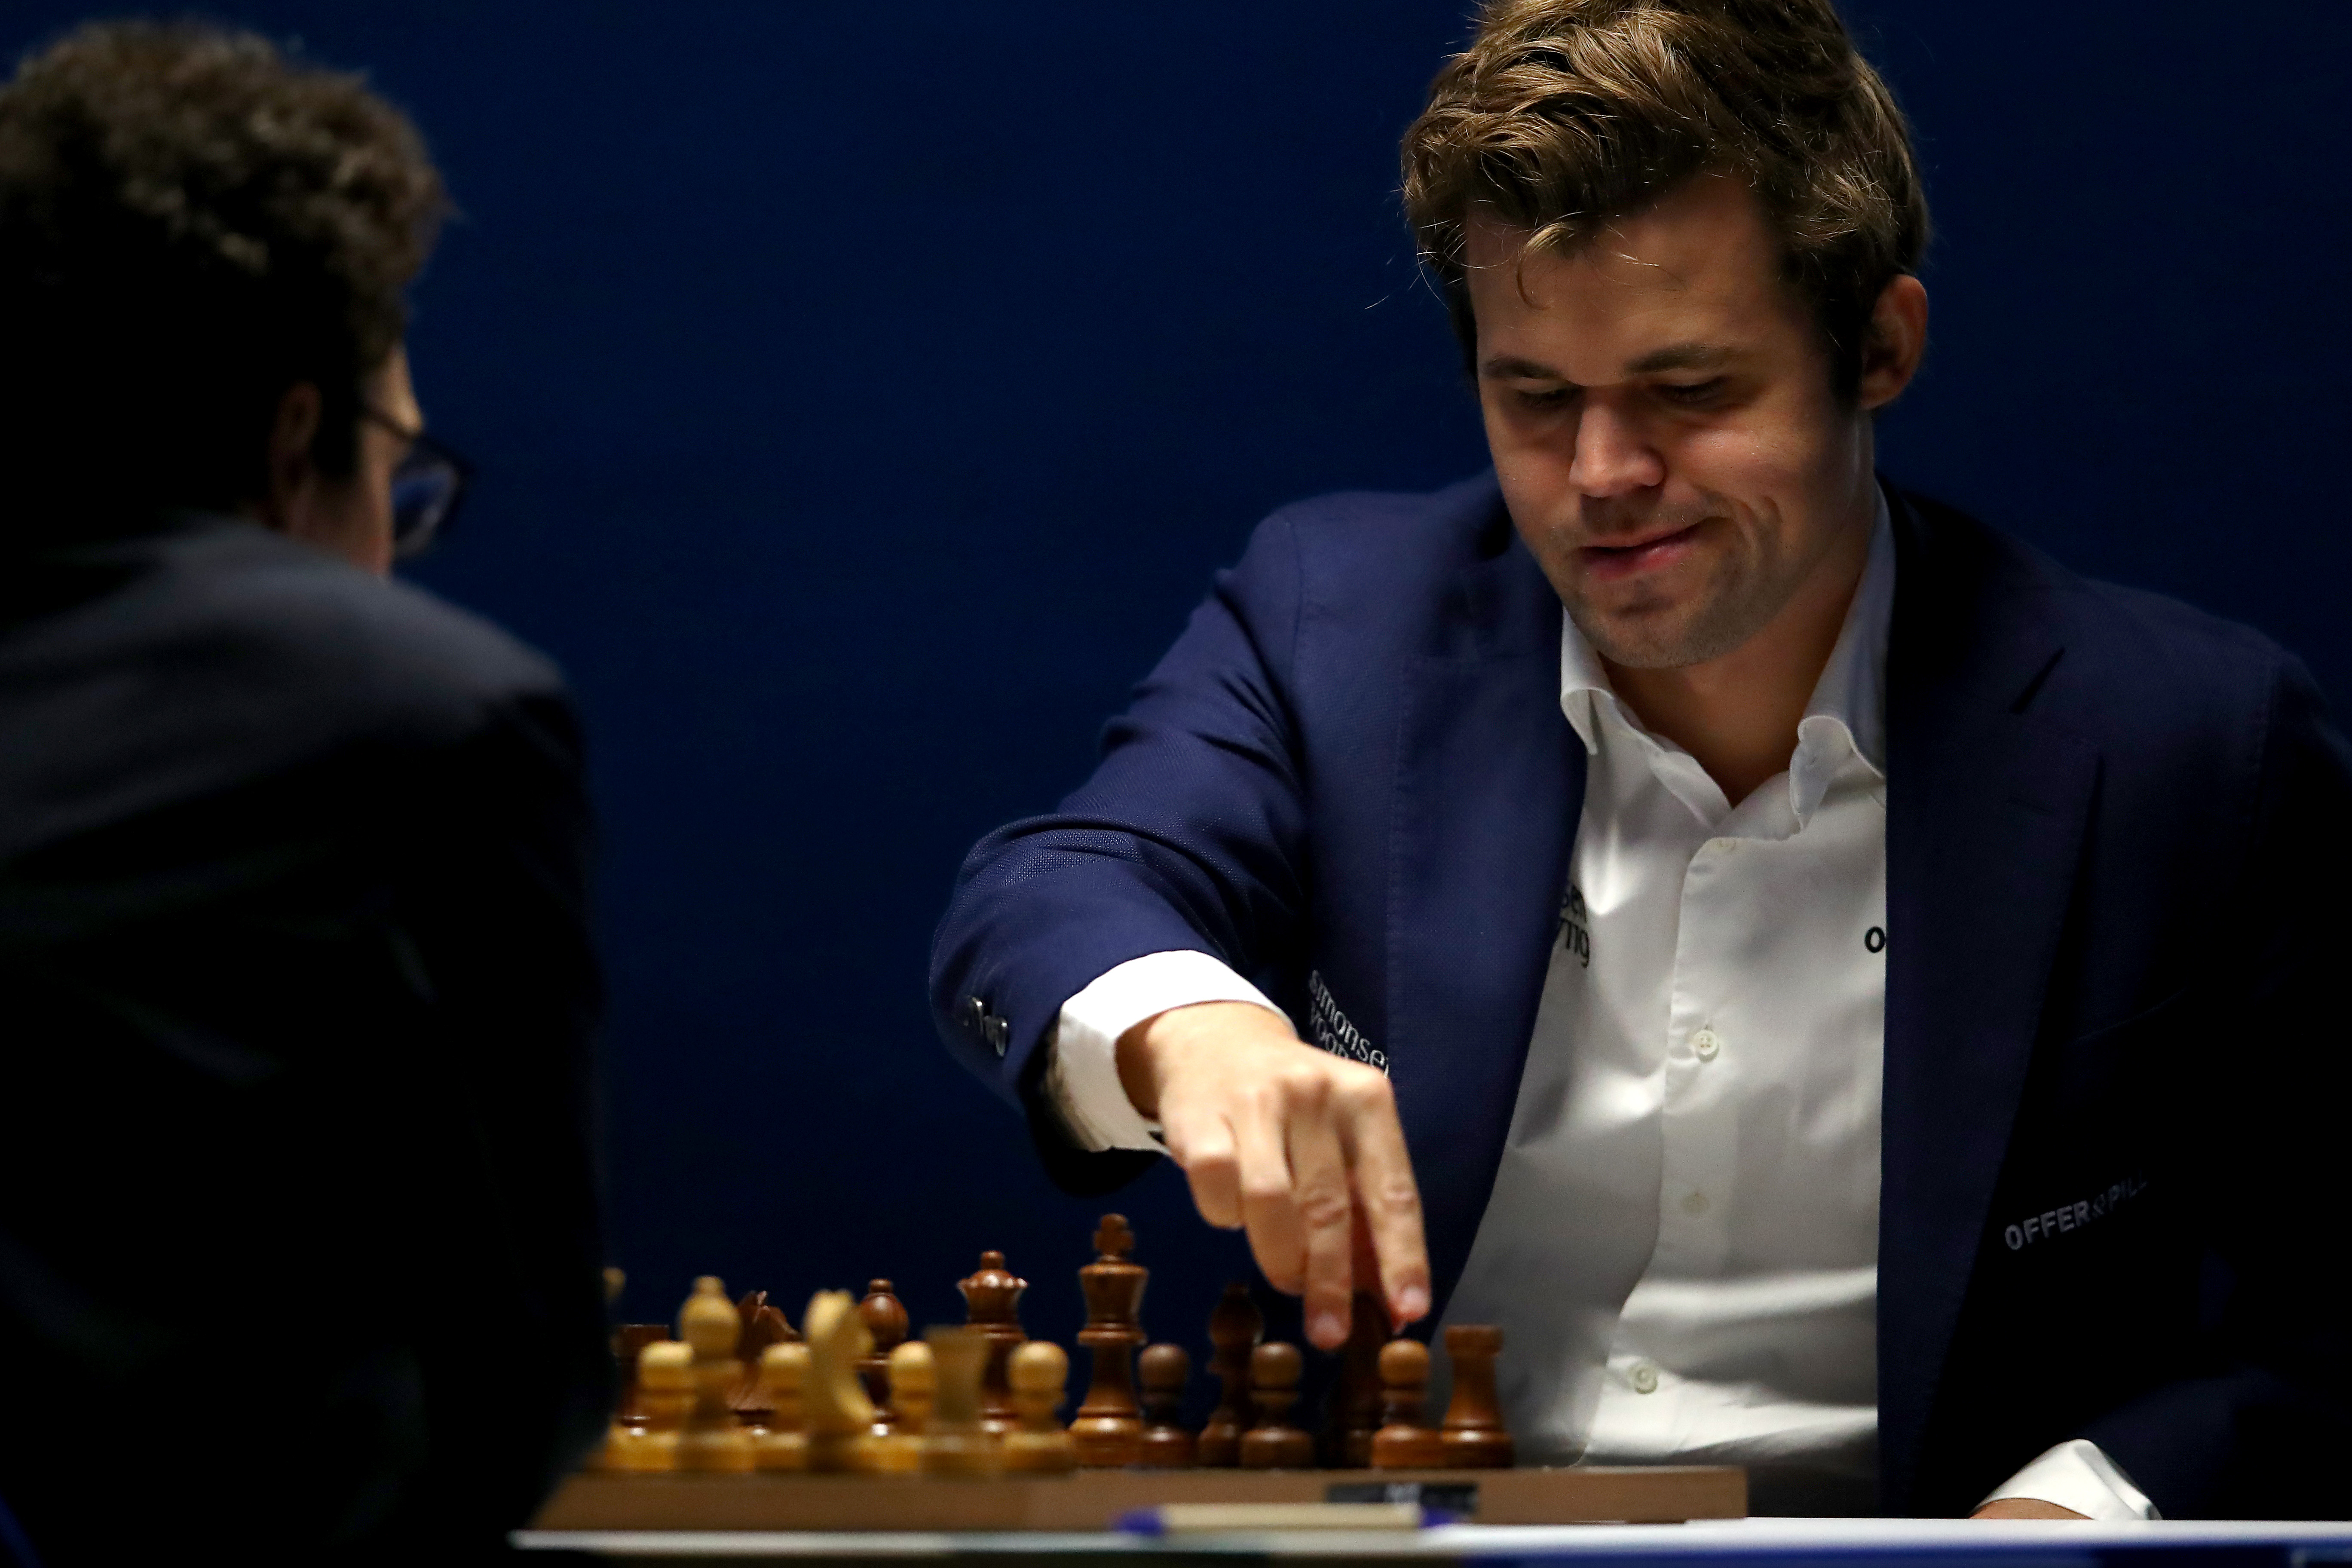 Magnus Carlsen hunts 8th Wijk aan Zee title